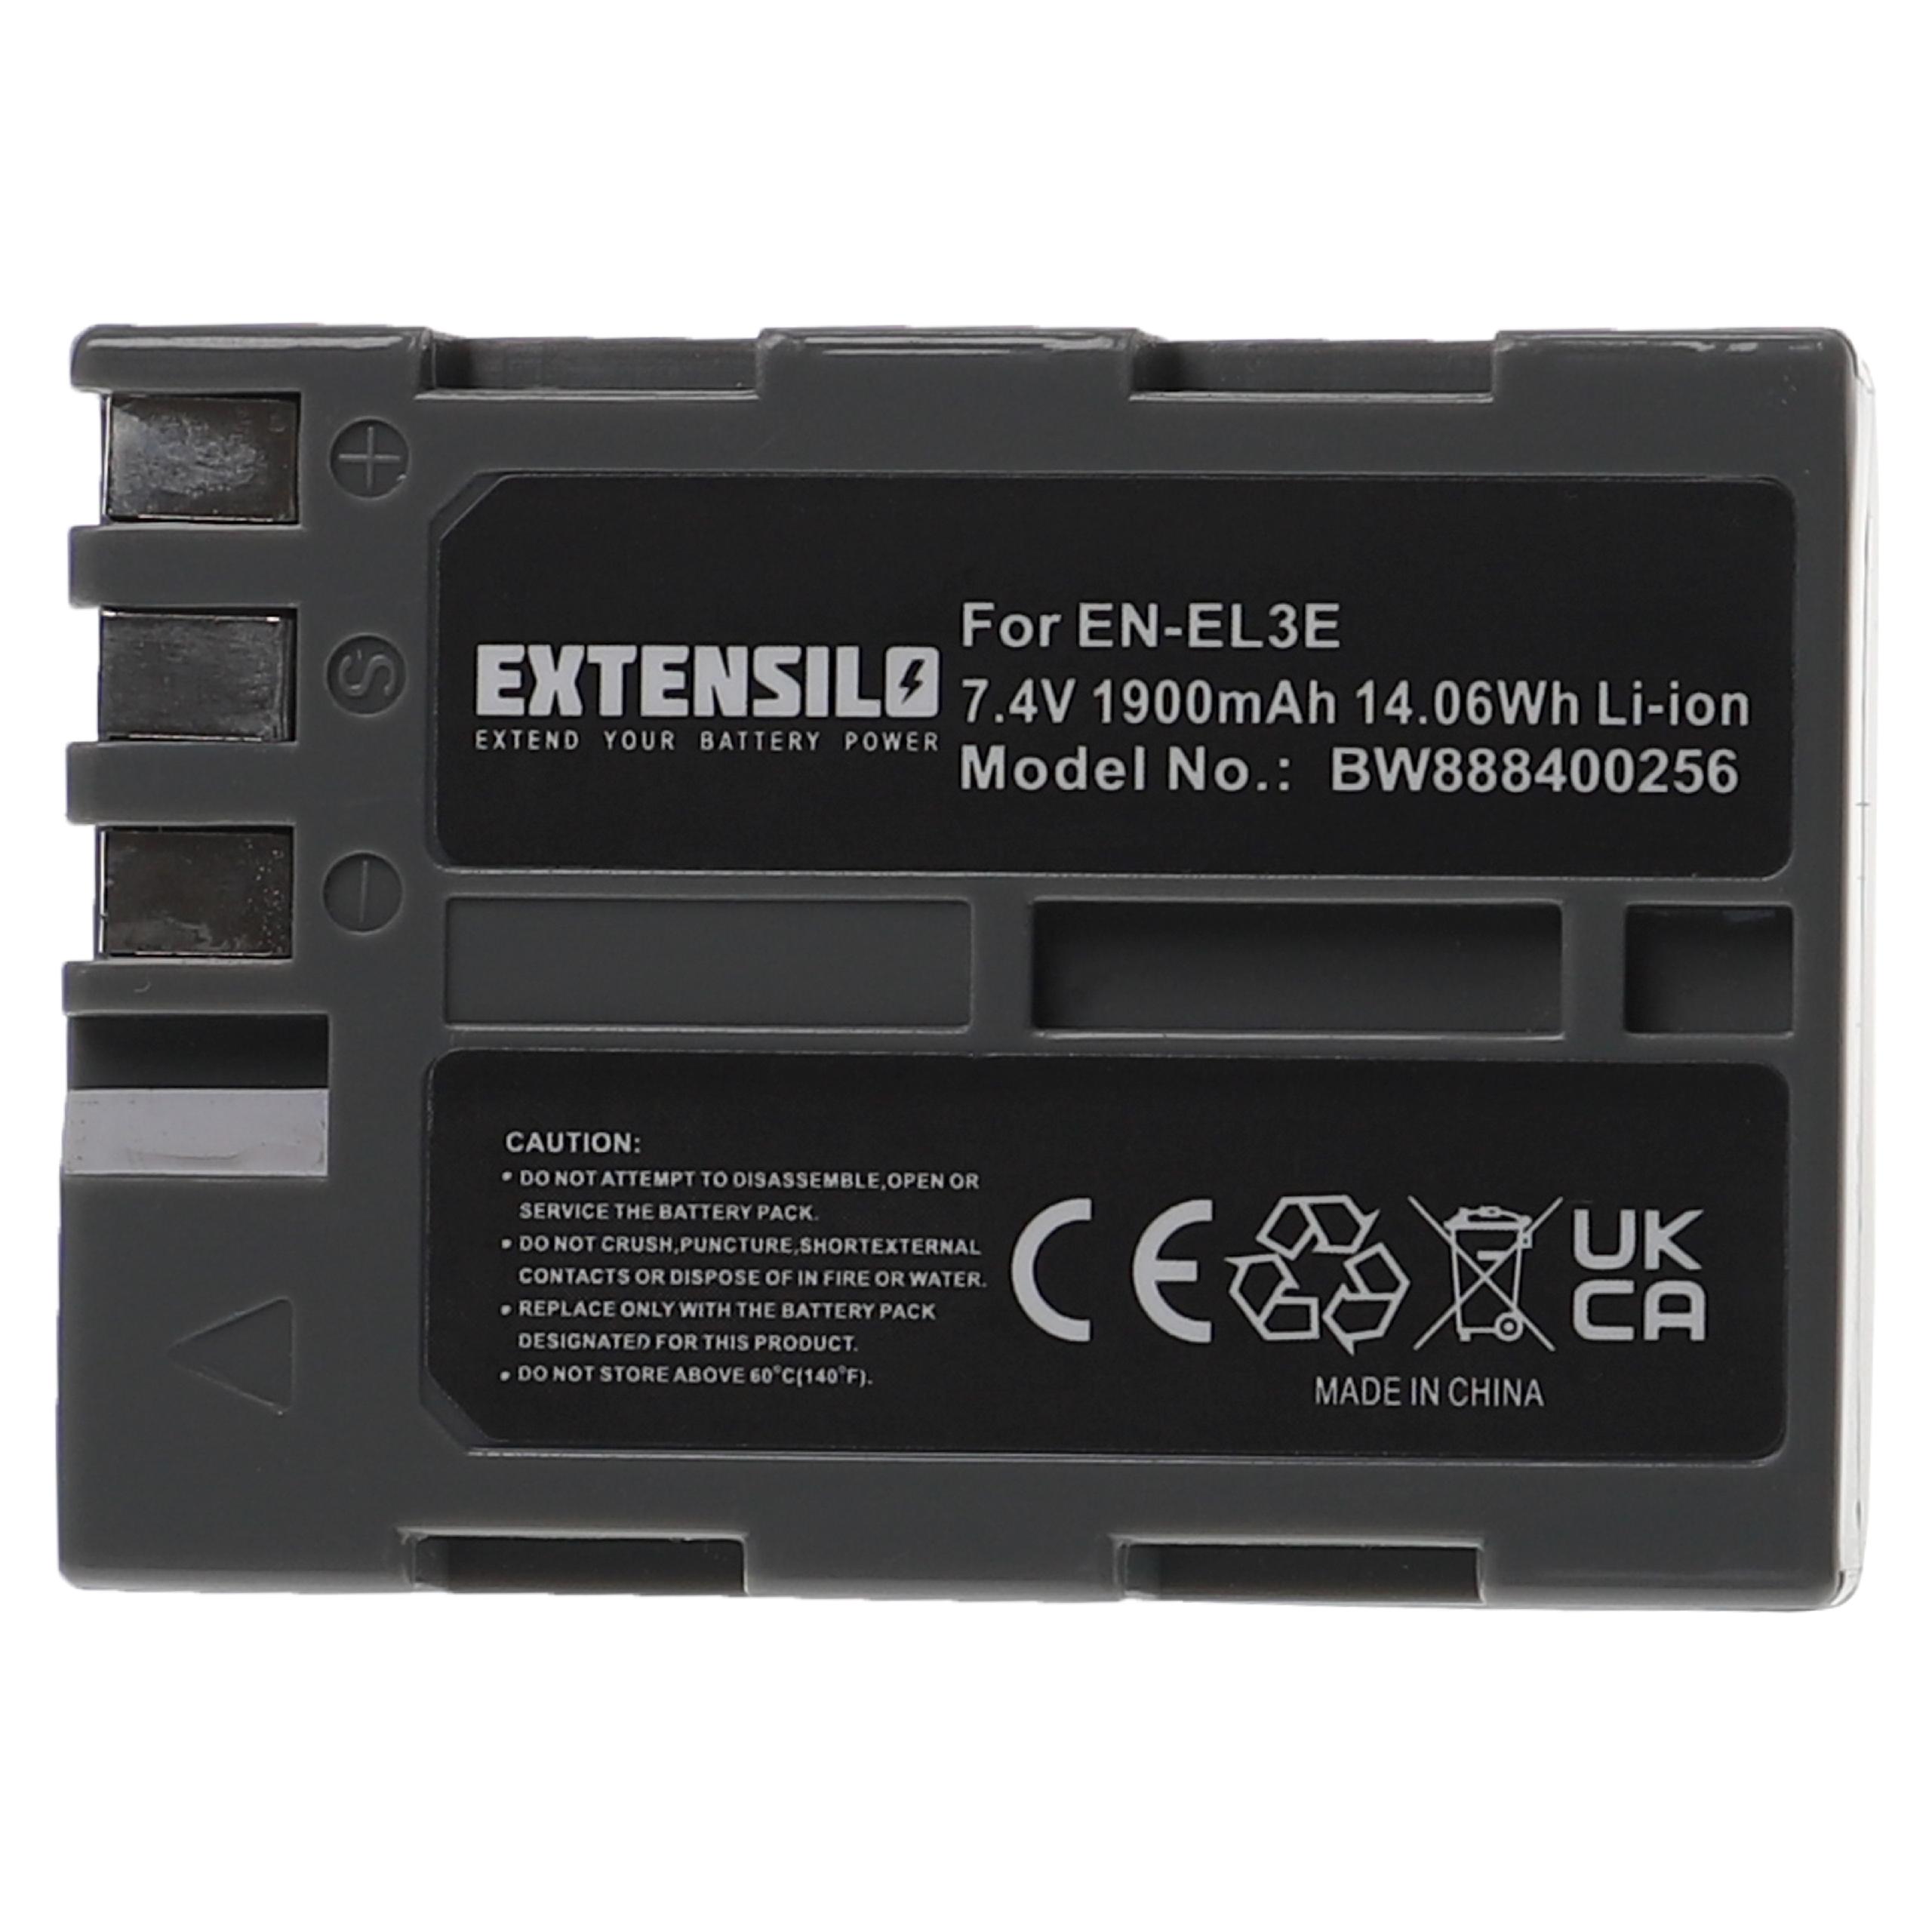 Battery Replacement for Nikon EN-EL3e - 1900mAh, 7.4V, Li-Ion